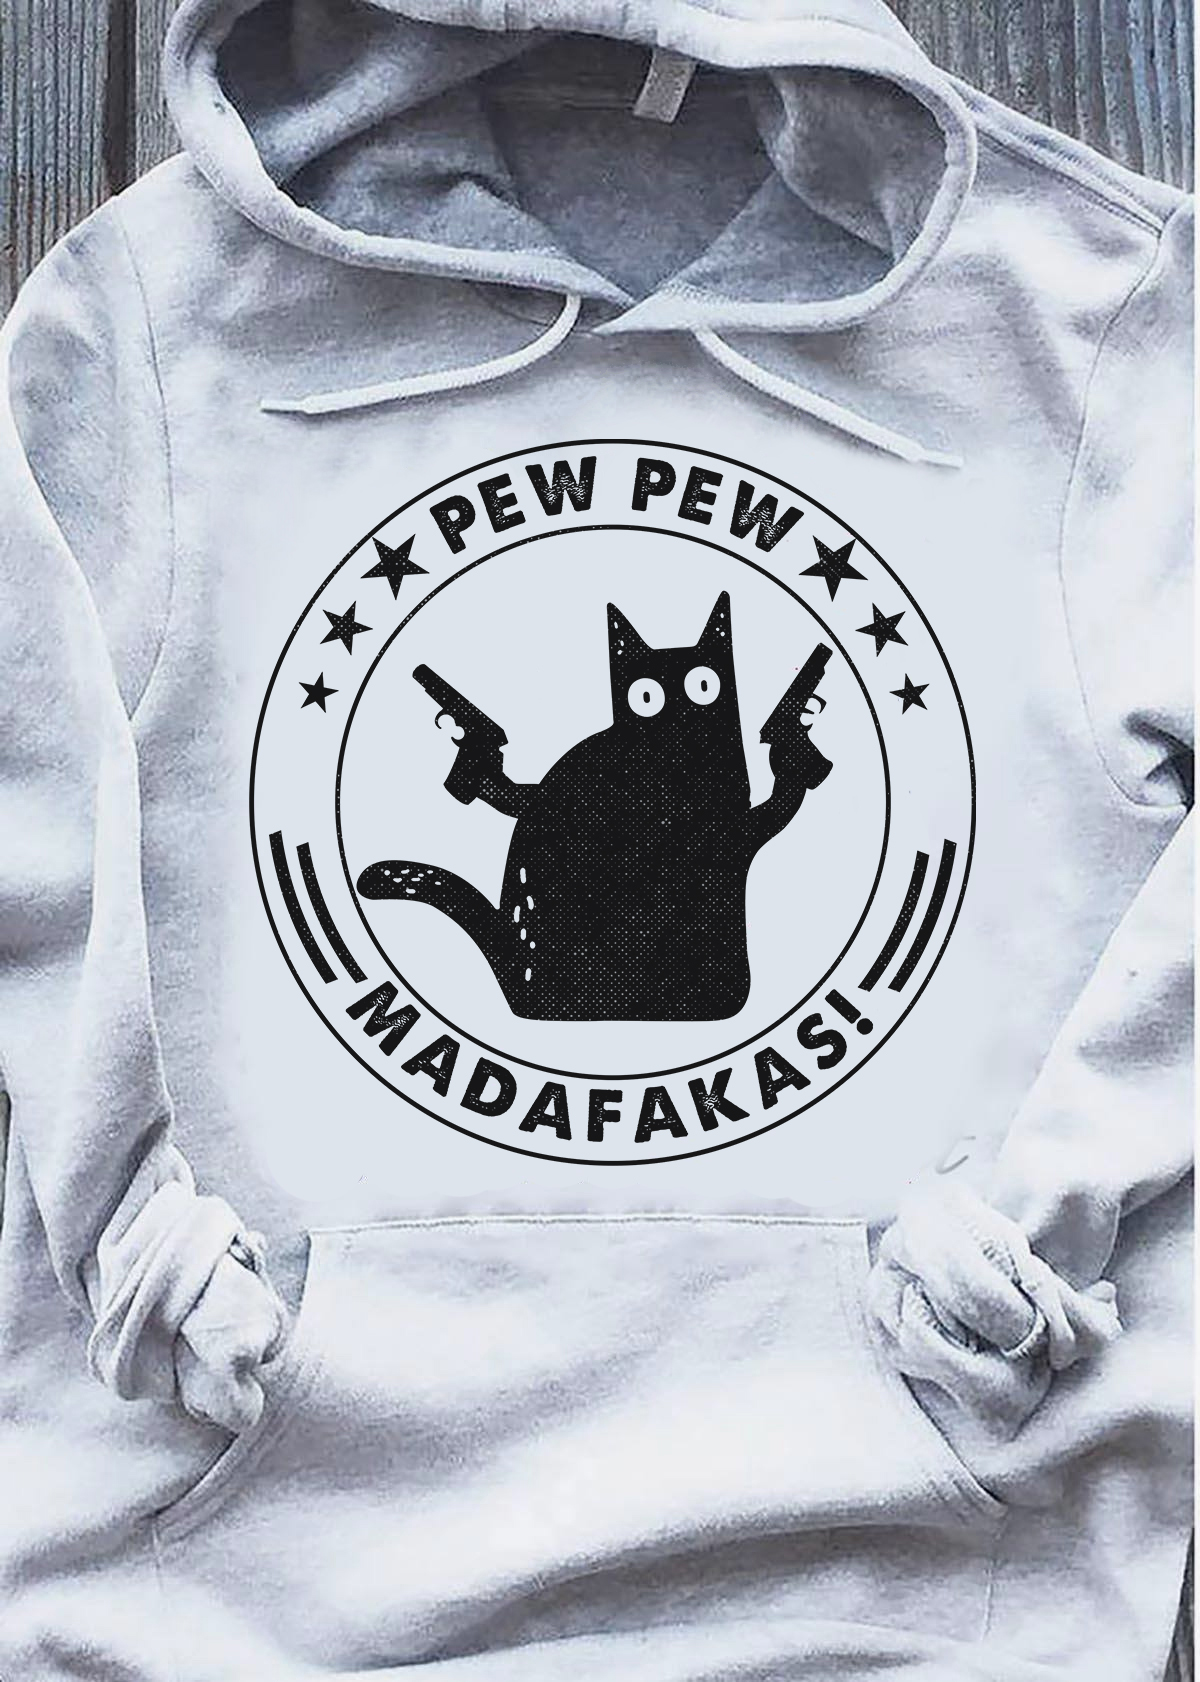 Pewpew madafakas - Black cat with guns